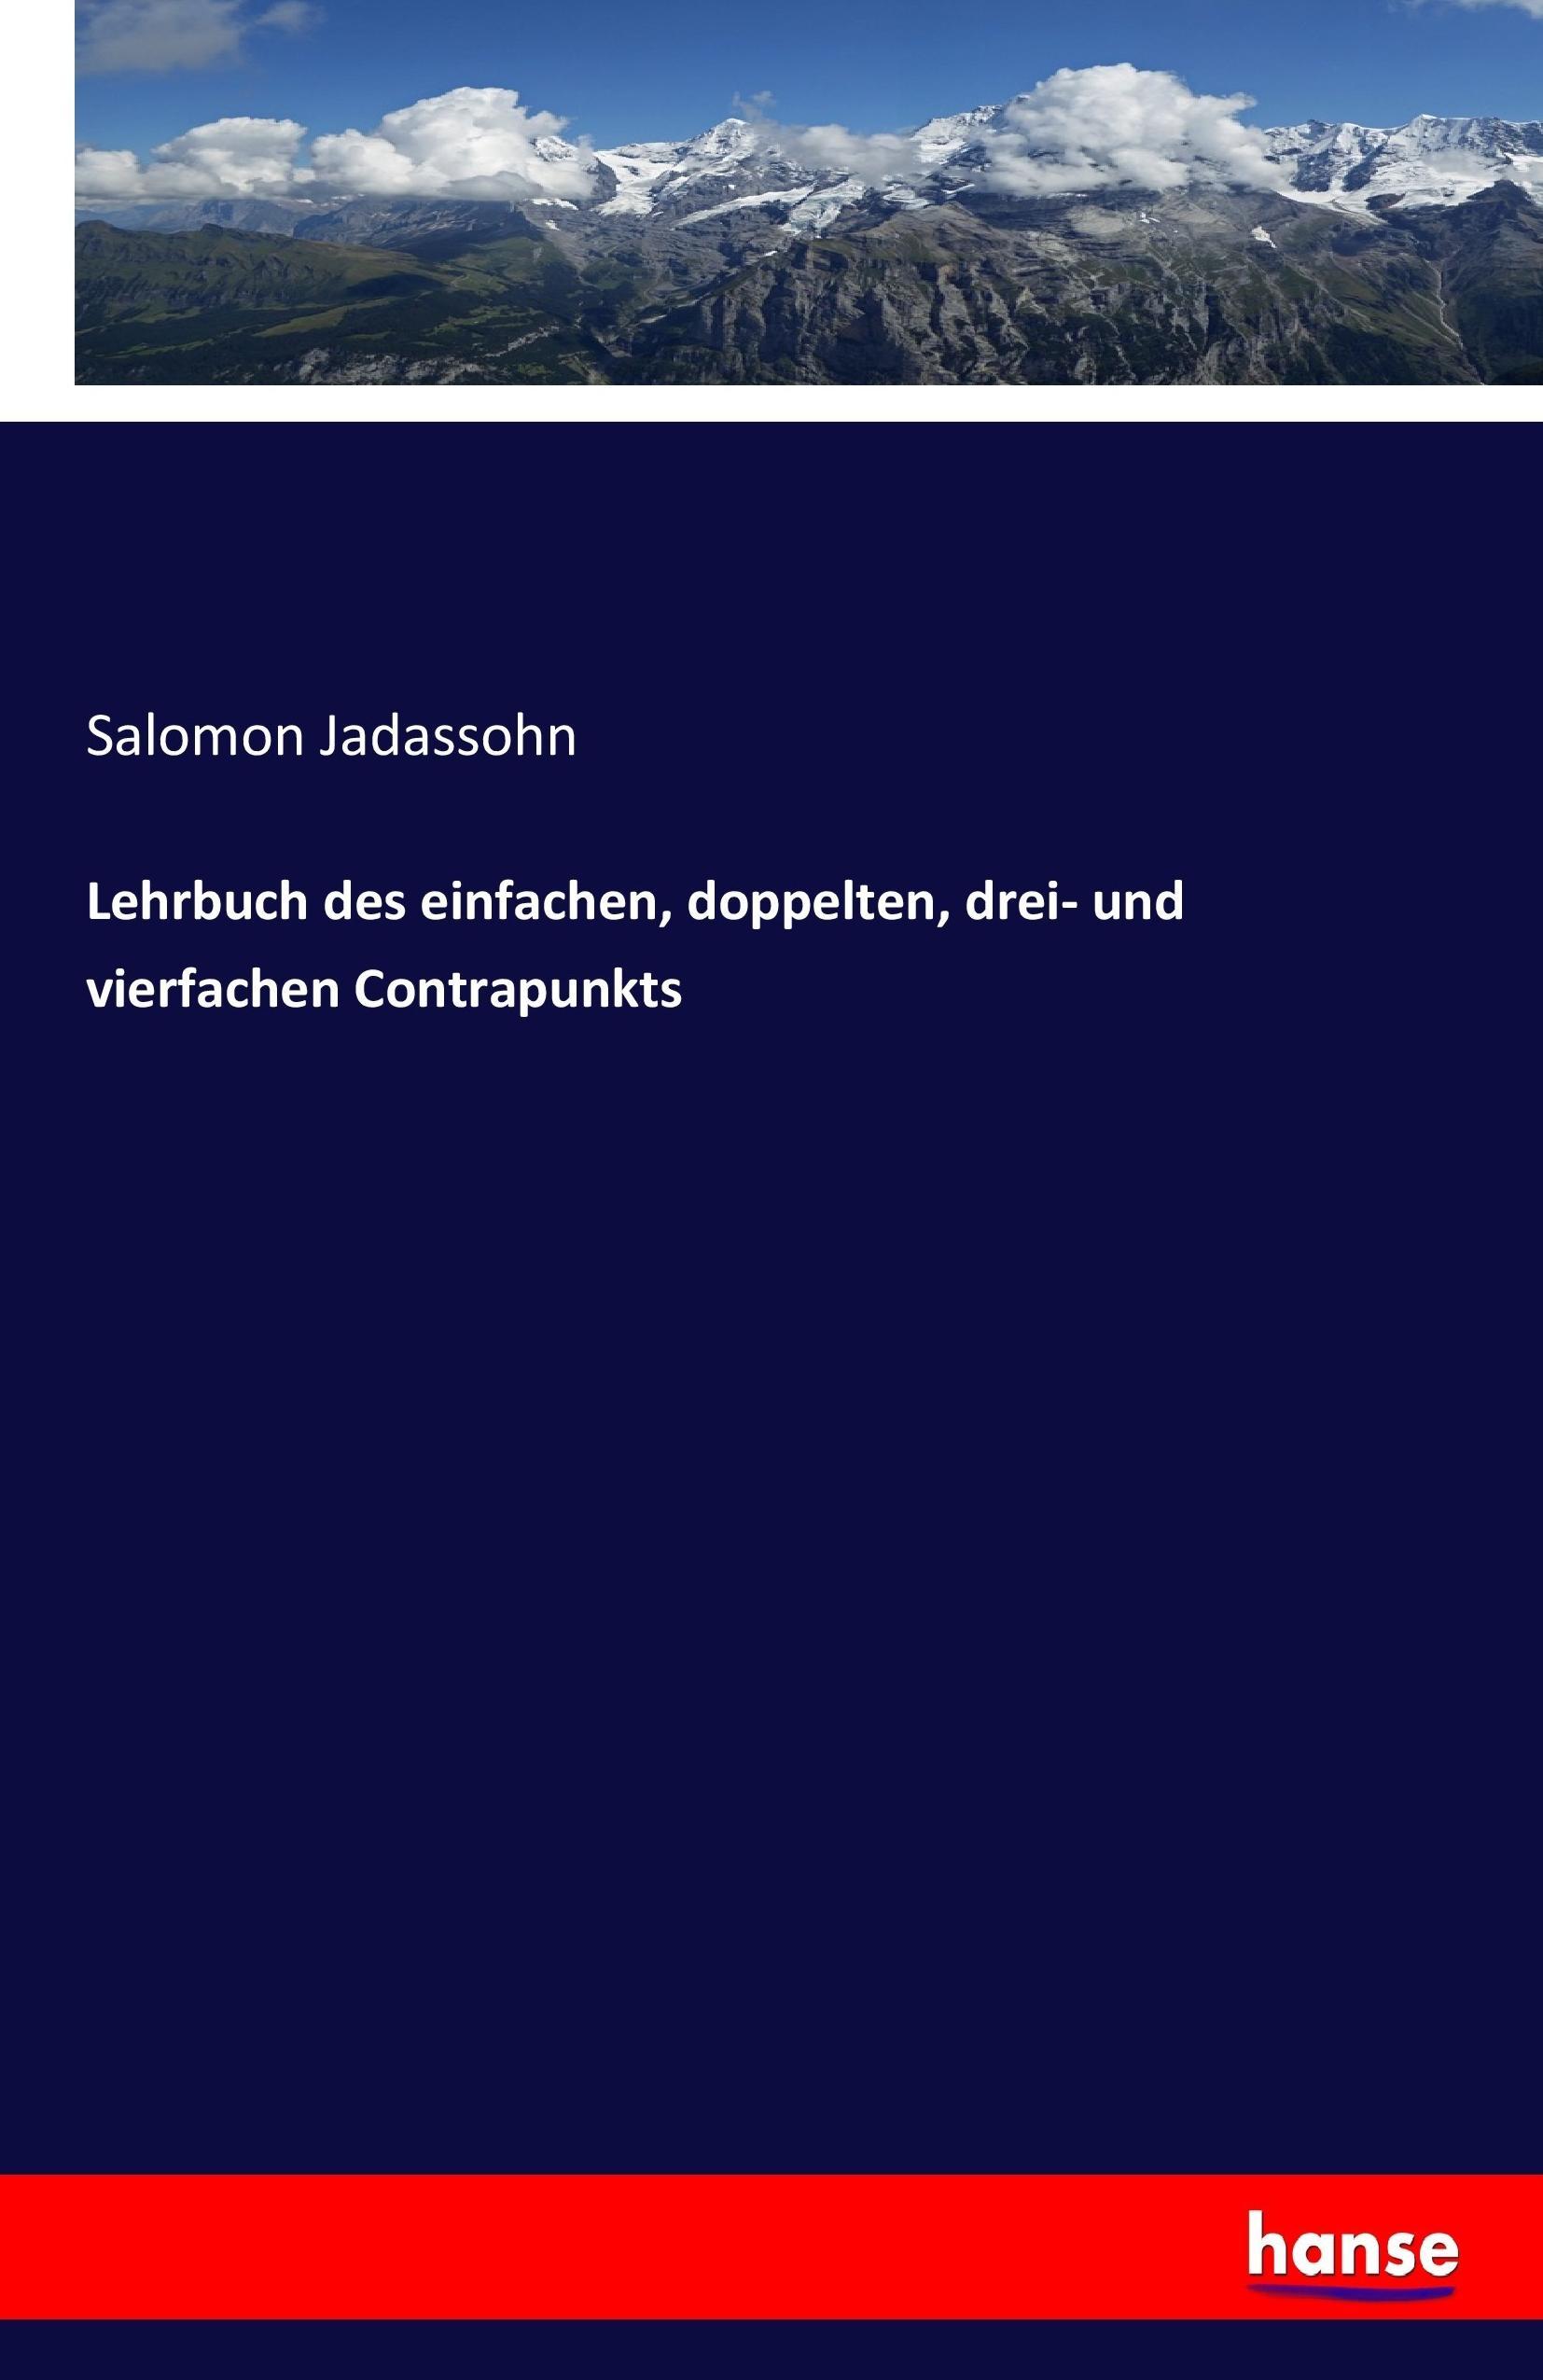 Lehrbuch des einfachen, doppelten, drei- und vierfachen Contrapunkts - Jadassohn, Salomon